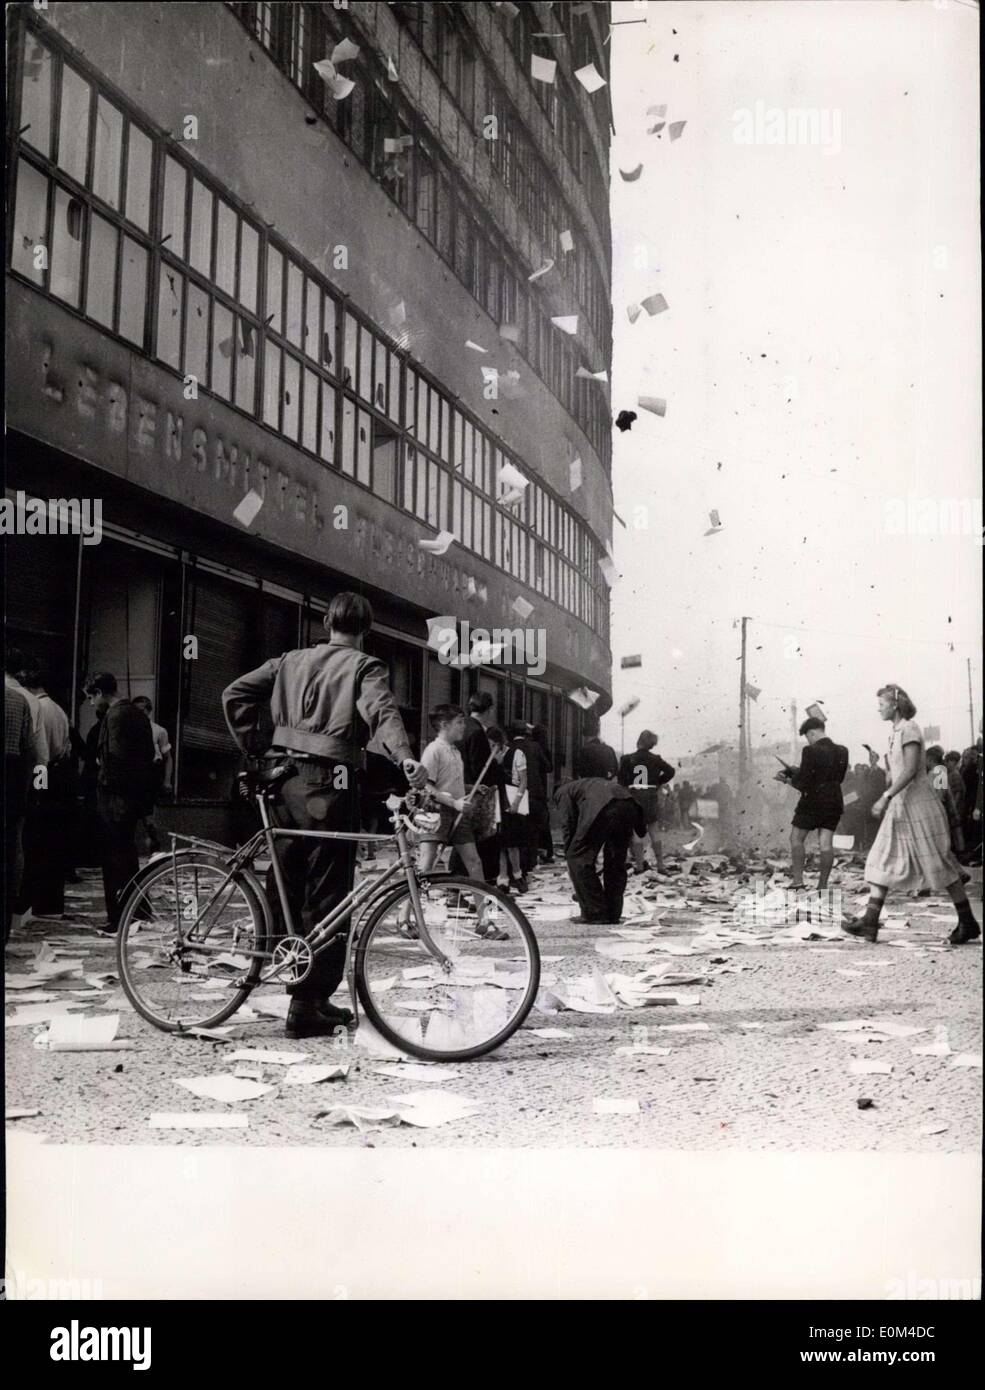 18. Juni 1953 - Ho-Gebäude von streikenden besetzt: In einer Sendung ausgestrahlt letzte Nacht, die sowjetisch kontrollierten Ost-Berliner Radiosender berichteten, dass '' imperialistische Gangster und ihre Ost-Berliner Anhänger haben 'Virtuell' HO-Building, eines der wenigen großen sowjetisch kontrollierten Einkaufszentren zerstört. Das Publikum stürmte das Gebäude, Drang, Rechnungen und Dokumente direkt durch die Fenster in den Bürgersteig und auf der Straße tobt, dass Jugendliche den '' Rest der HO-Bürokratie '' verbrannt. Nach das Gebäude brannte Stockfoto